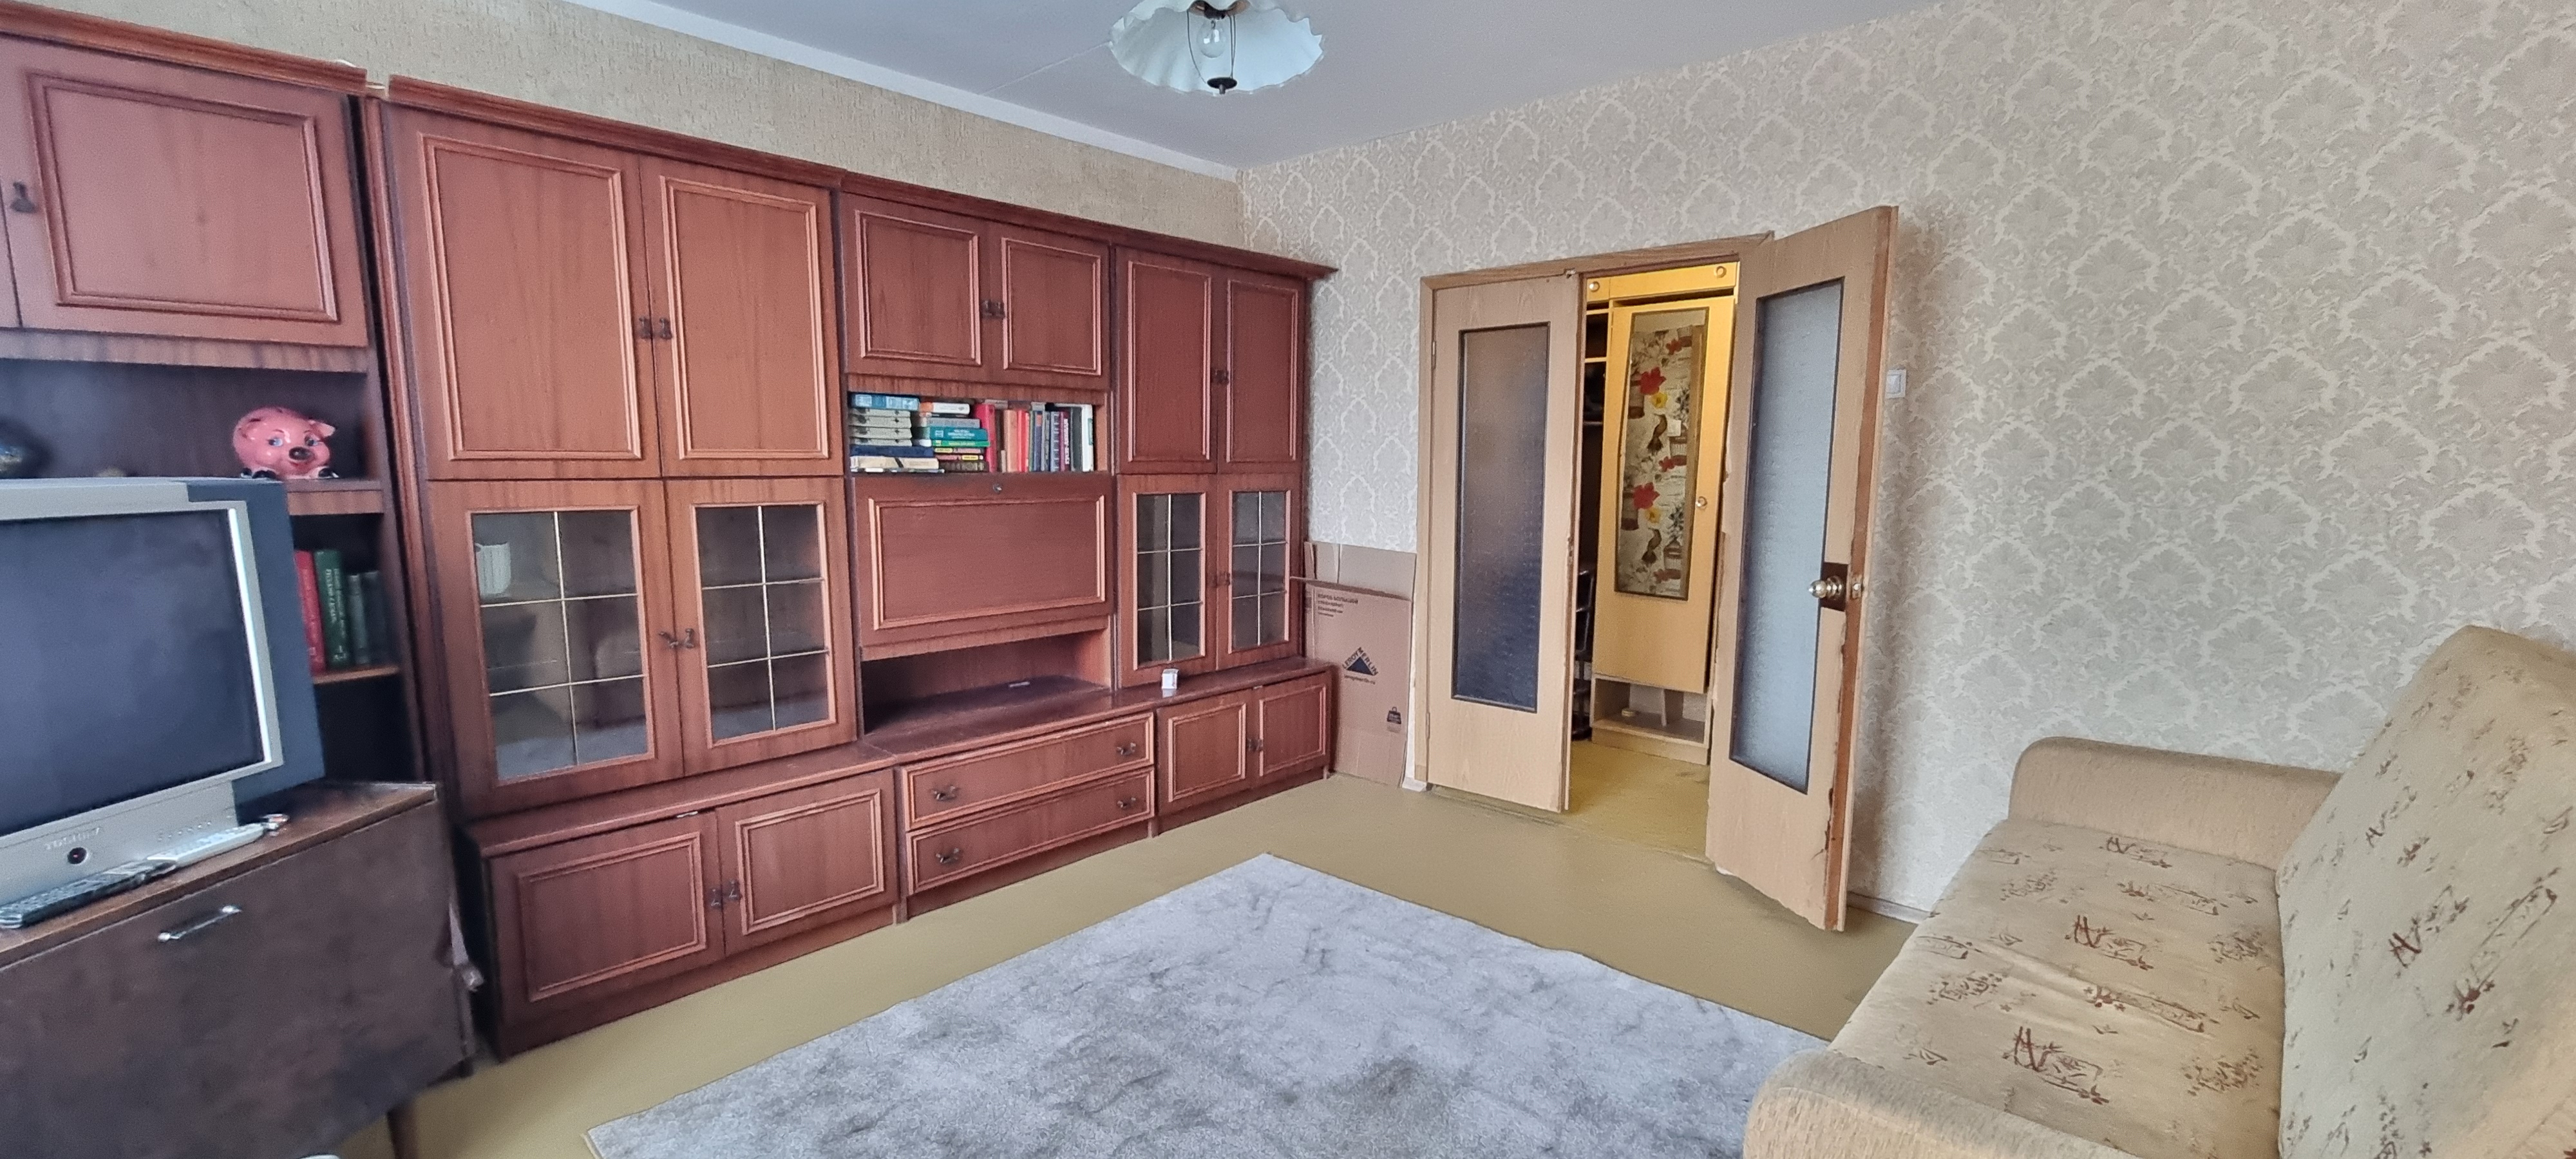 Продажа 2-комнатной квартиры, Зеленоград, 1208